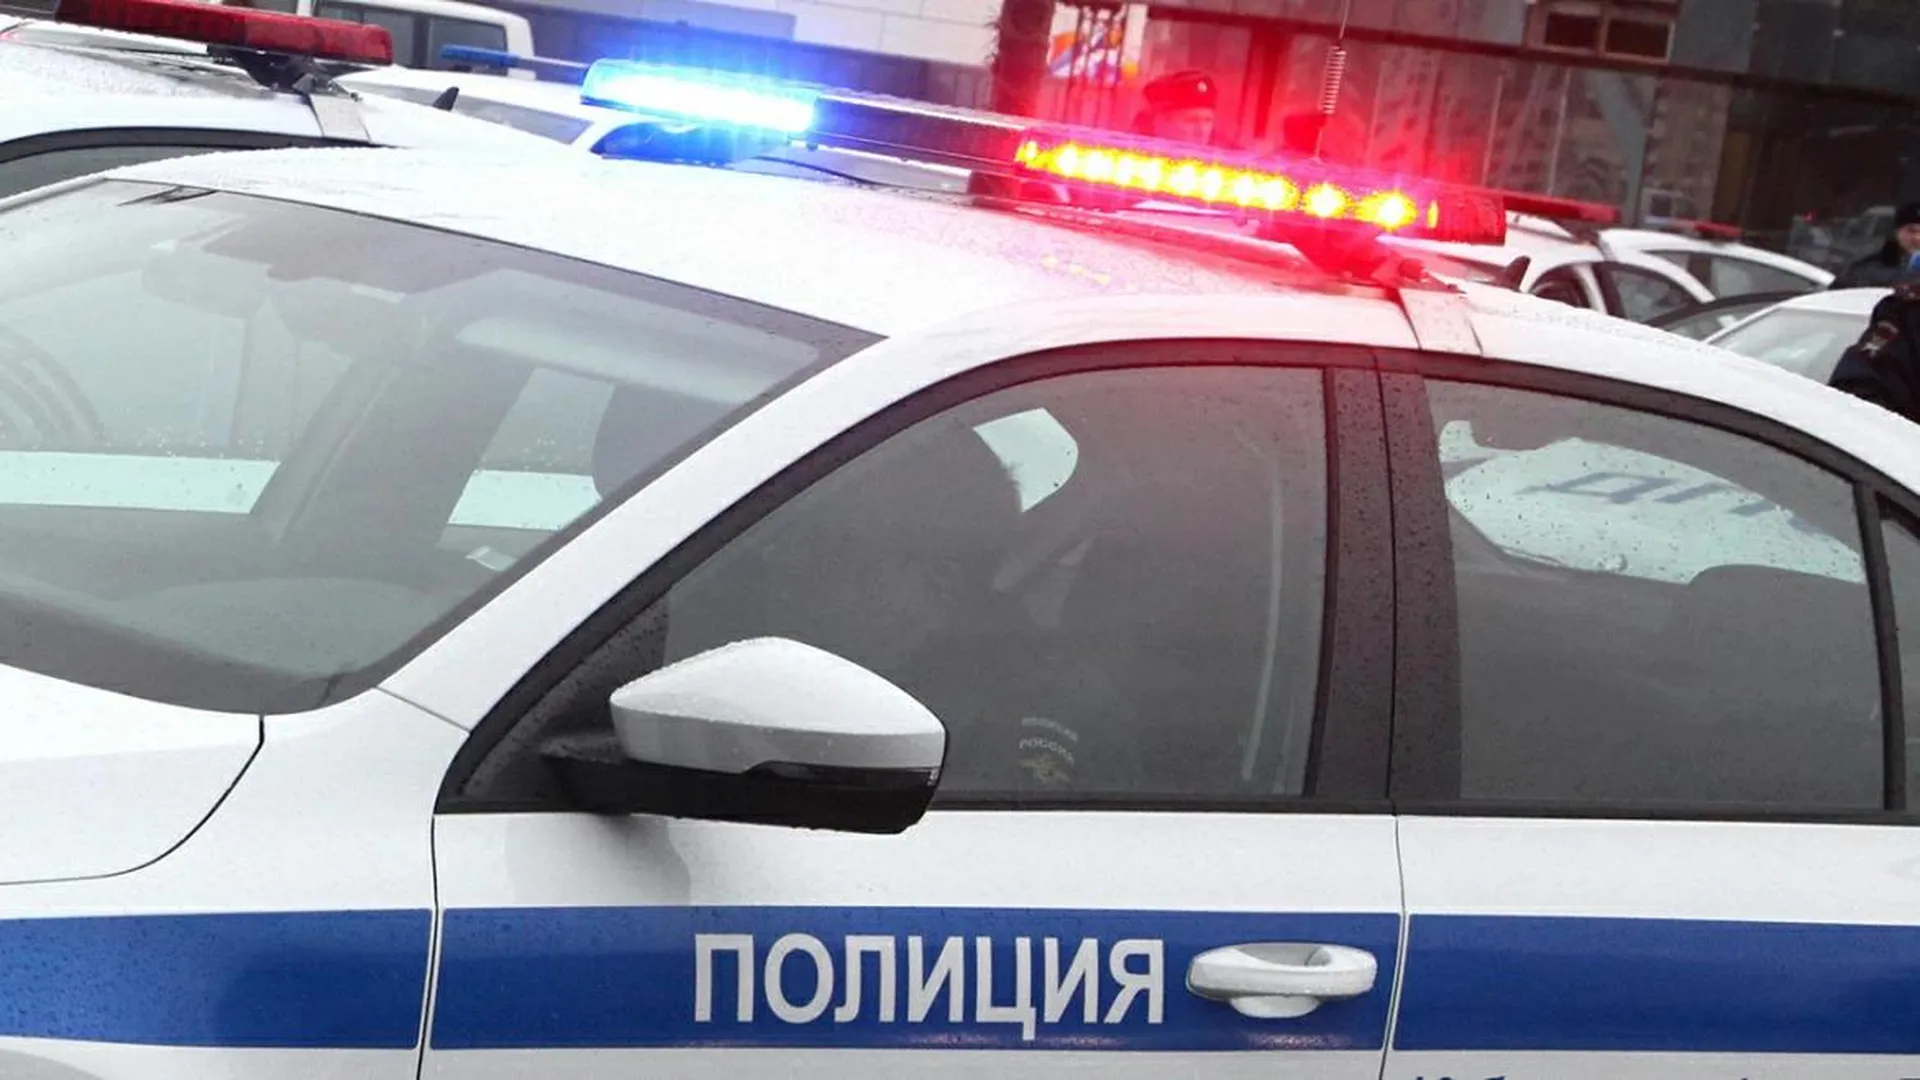 Московская путана избила полицейского и залила его перцовым баллончиком